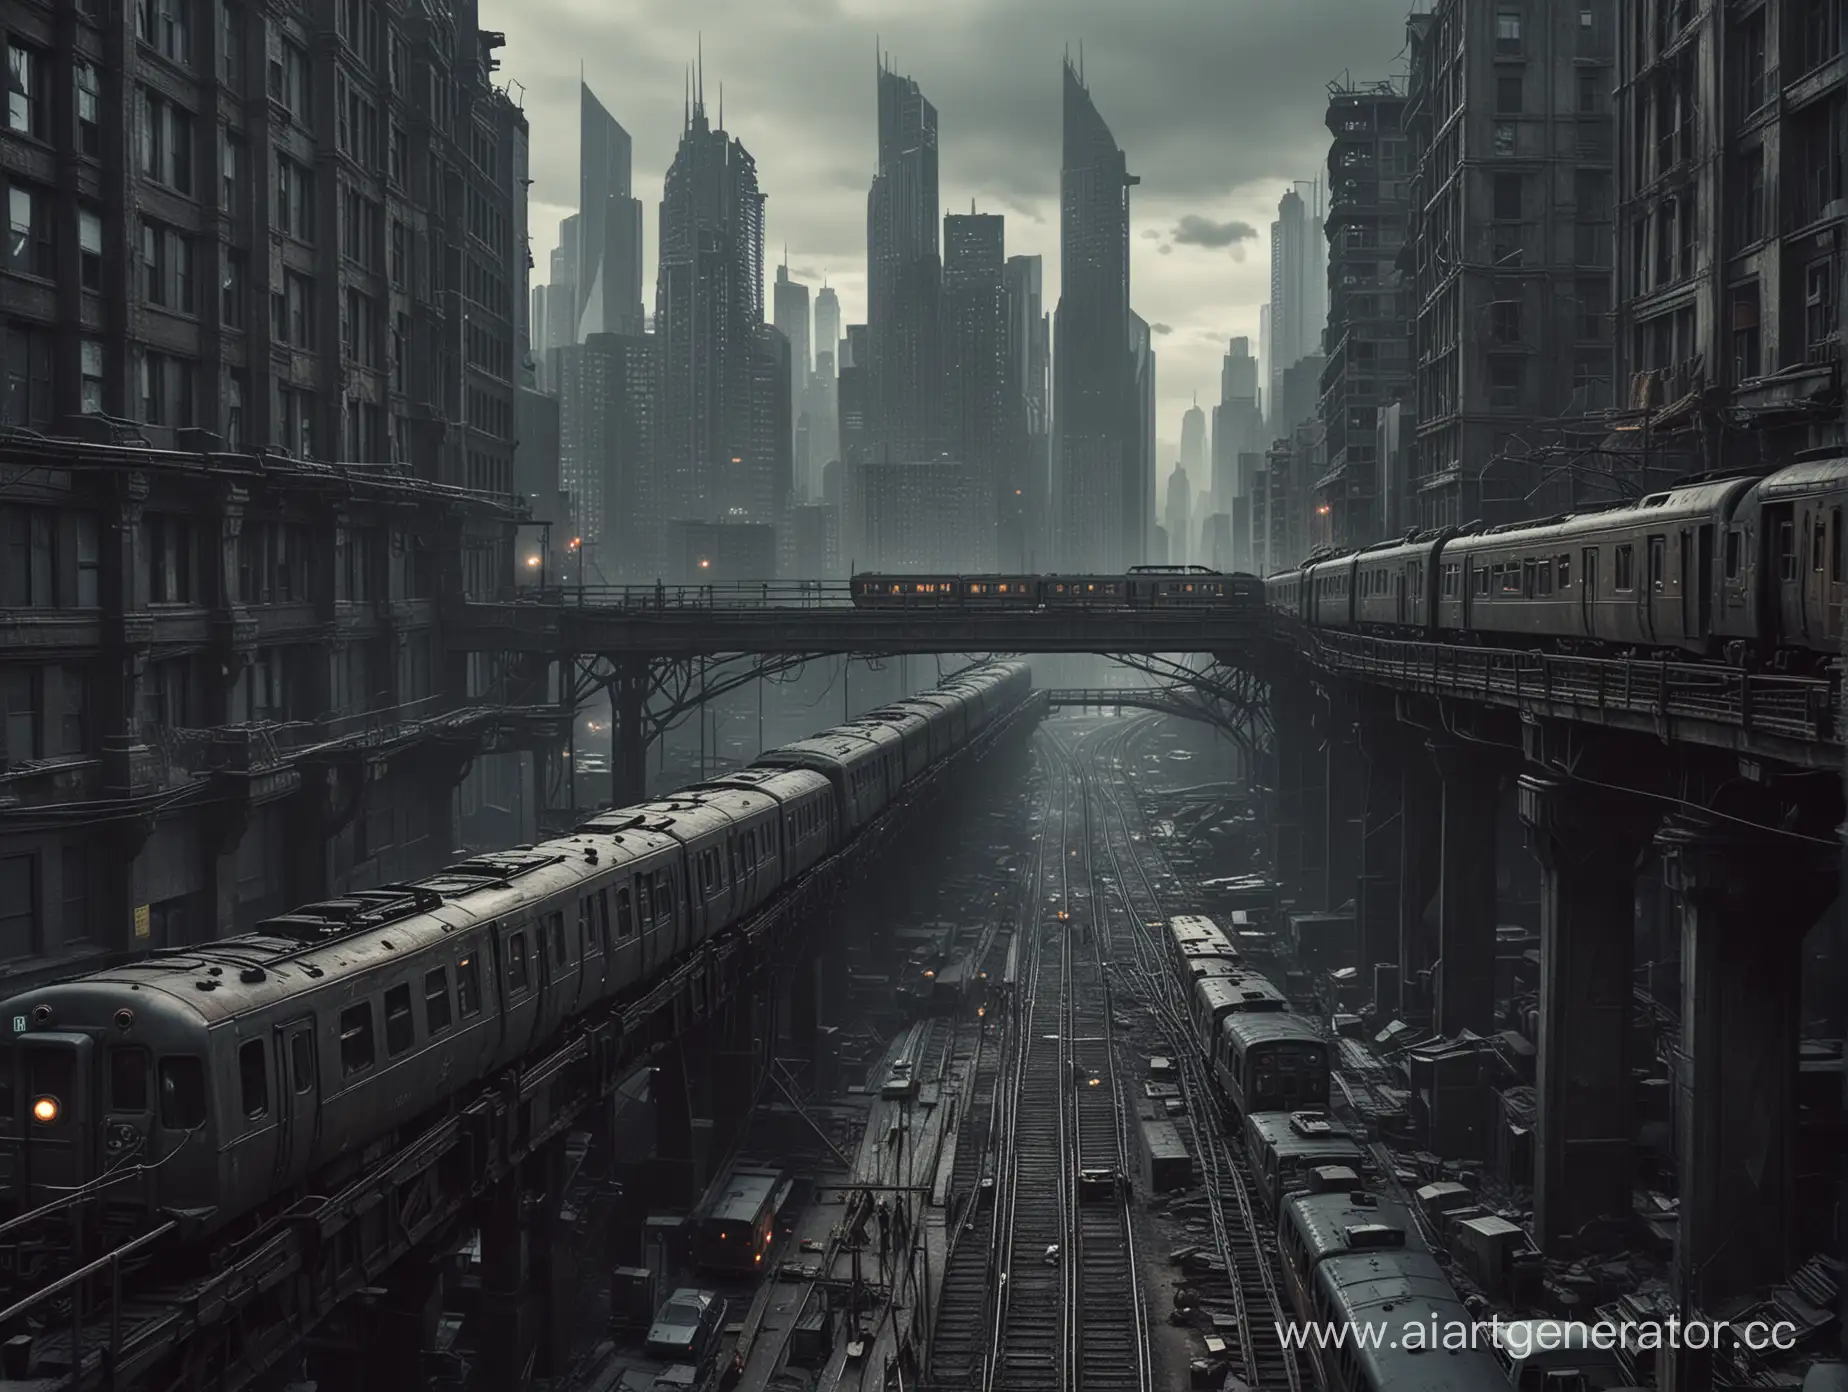 Поезд едет по мосту сквозь небоскребы, в темных тонах, в стиле постапокалиптики.